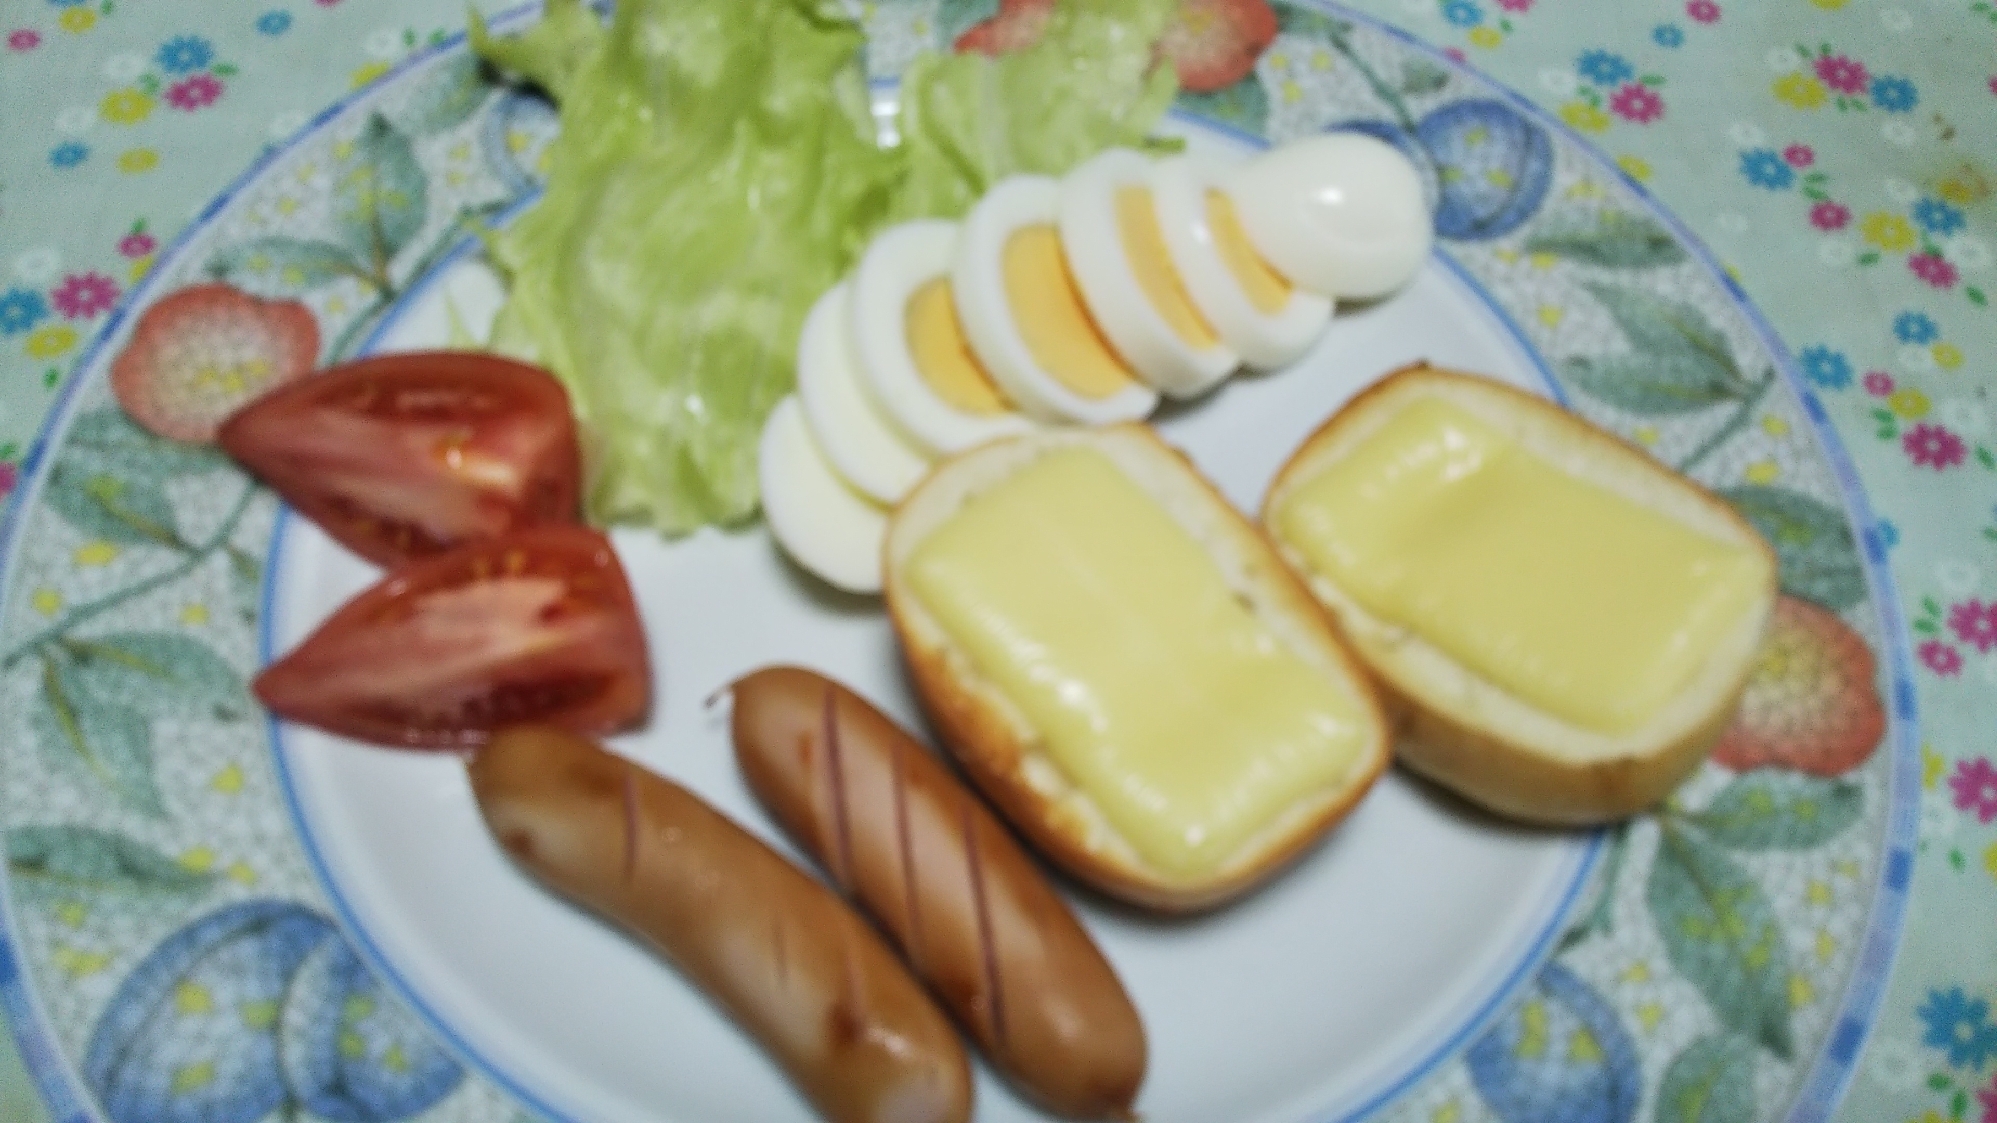 ディナーロールのチーズトーストとウインナーの朝食☆